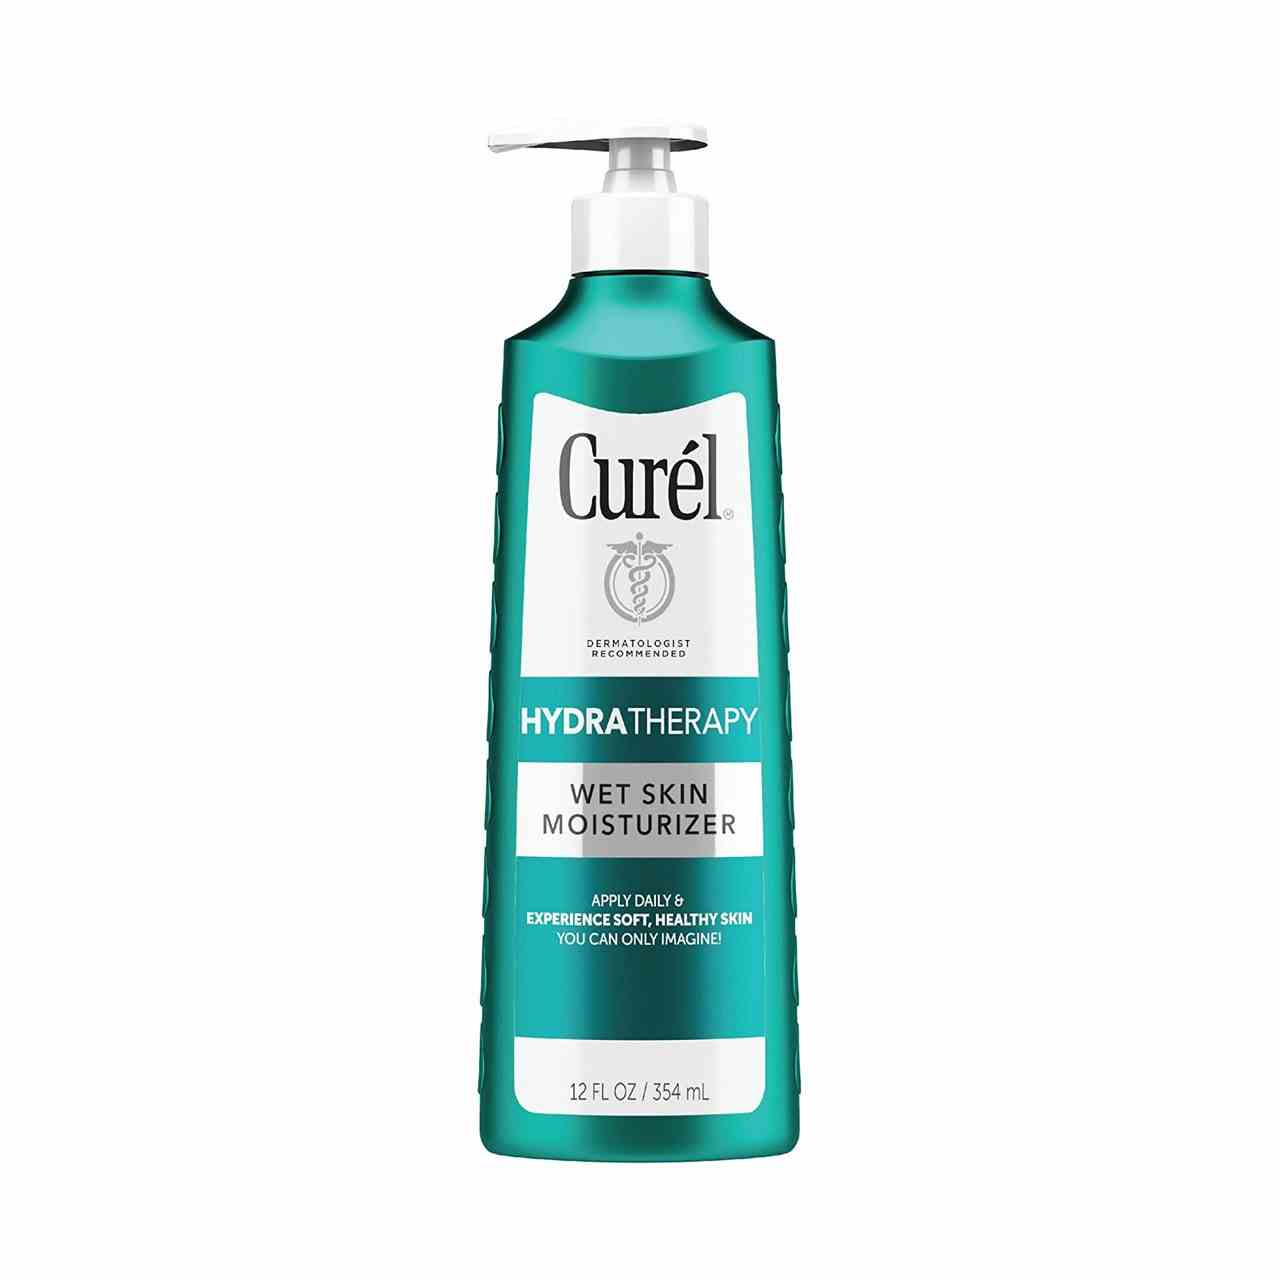 Curél Hydra Therapy Feuchtigkeitscreme für nasse Haut, blaugrüne Flasche mit weißer Pumpe auf weißem Hintergrund